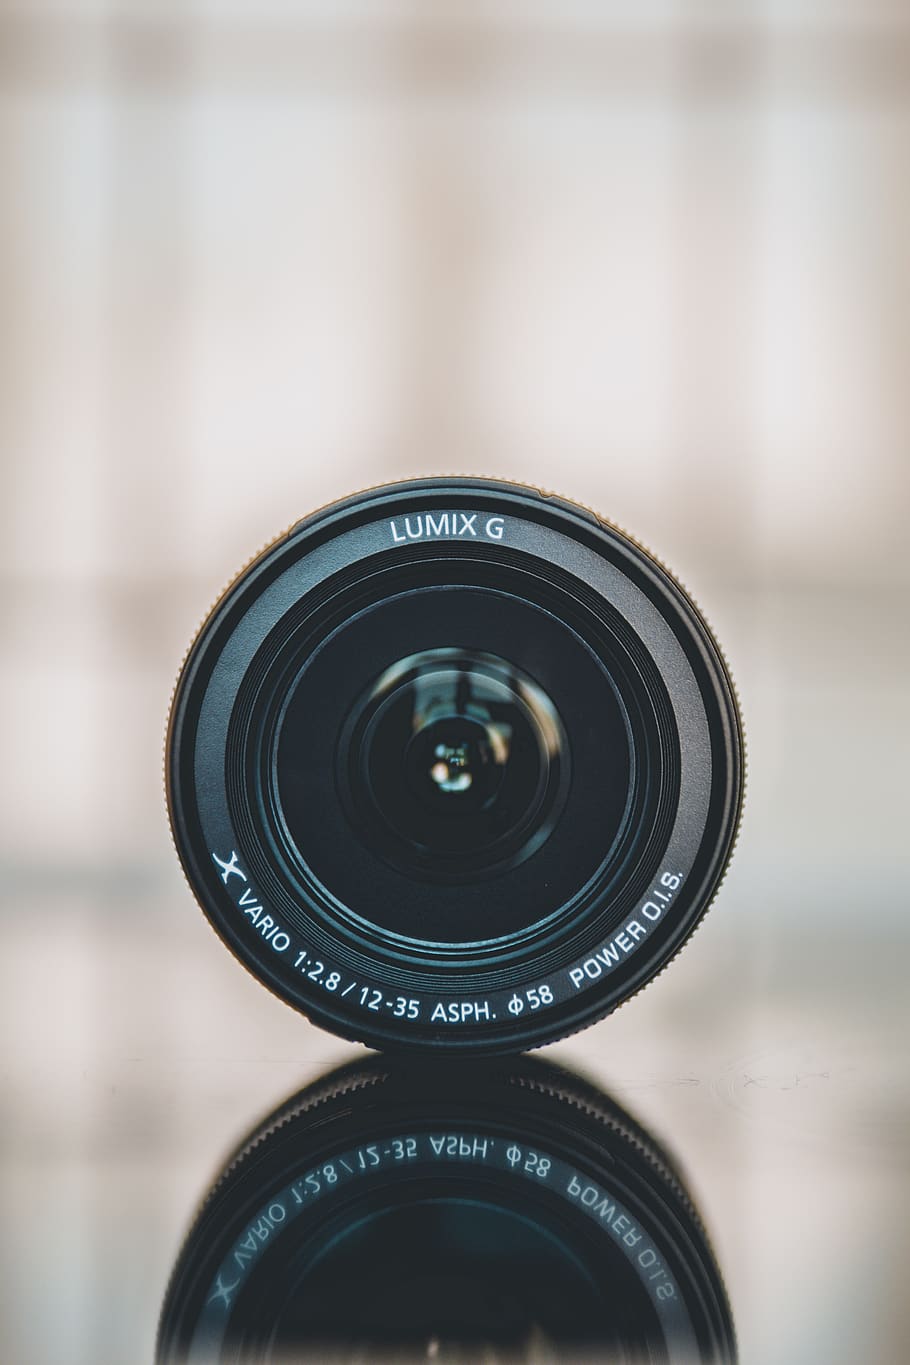 Lumix camera lens, electronics, lumix g, 12-35mm, gear, filmmaker